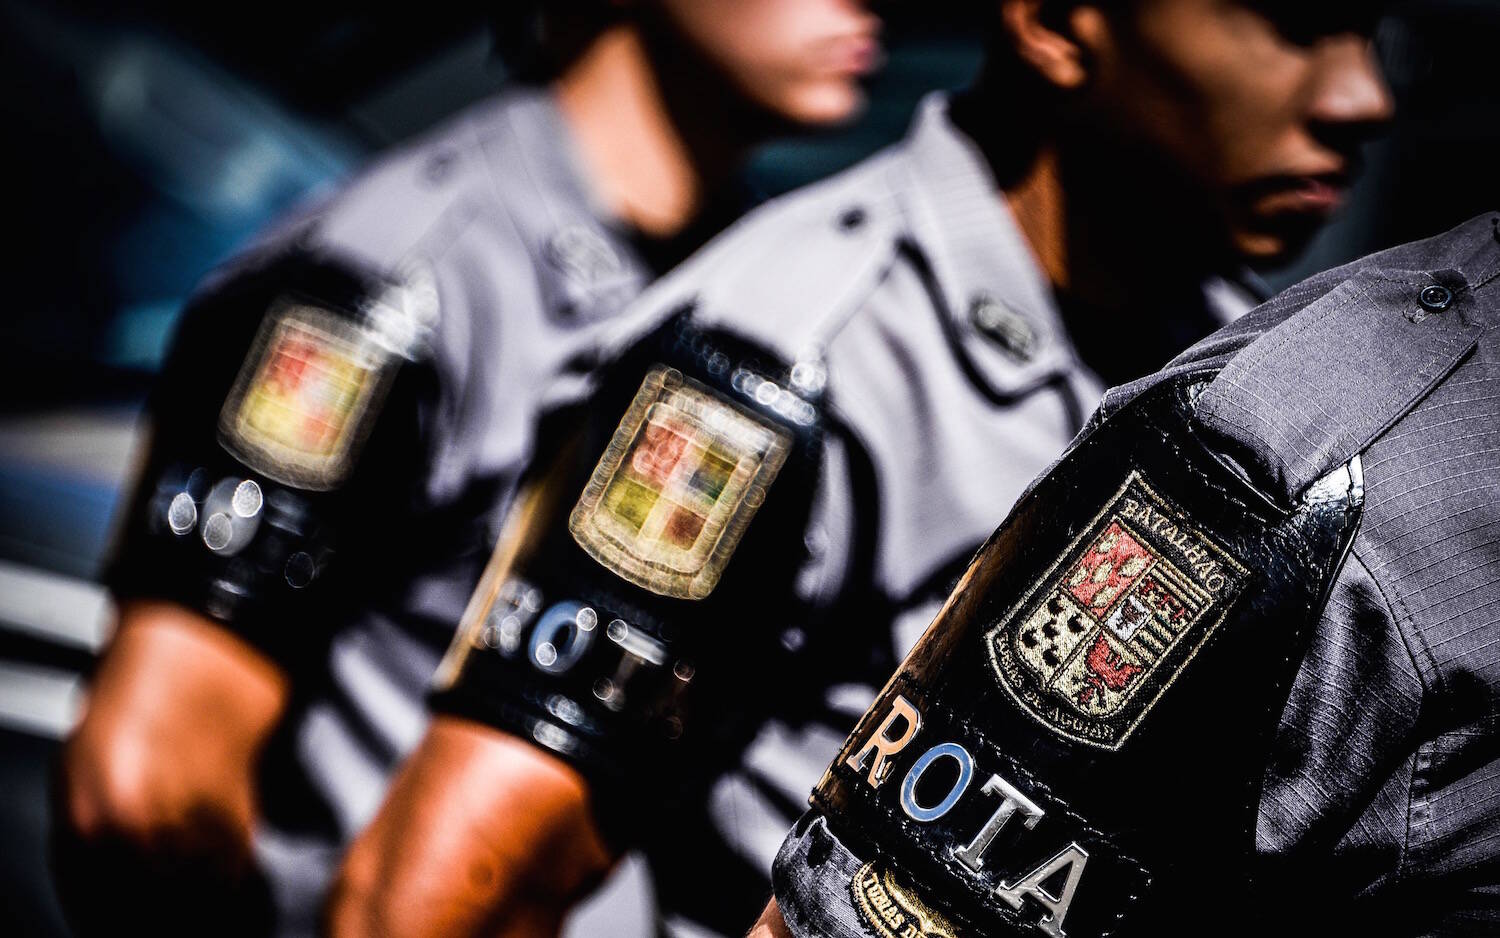 ROTA 1º Batalhão de Choque - Polícia Militar do Estado de São Paulo. Foto: Major PM Luis Augusto Pacheco Ambar